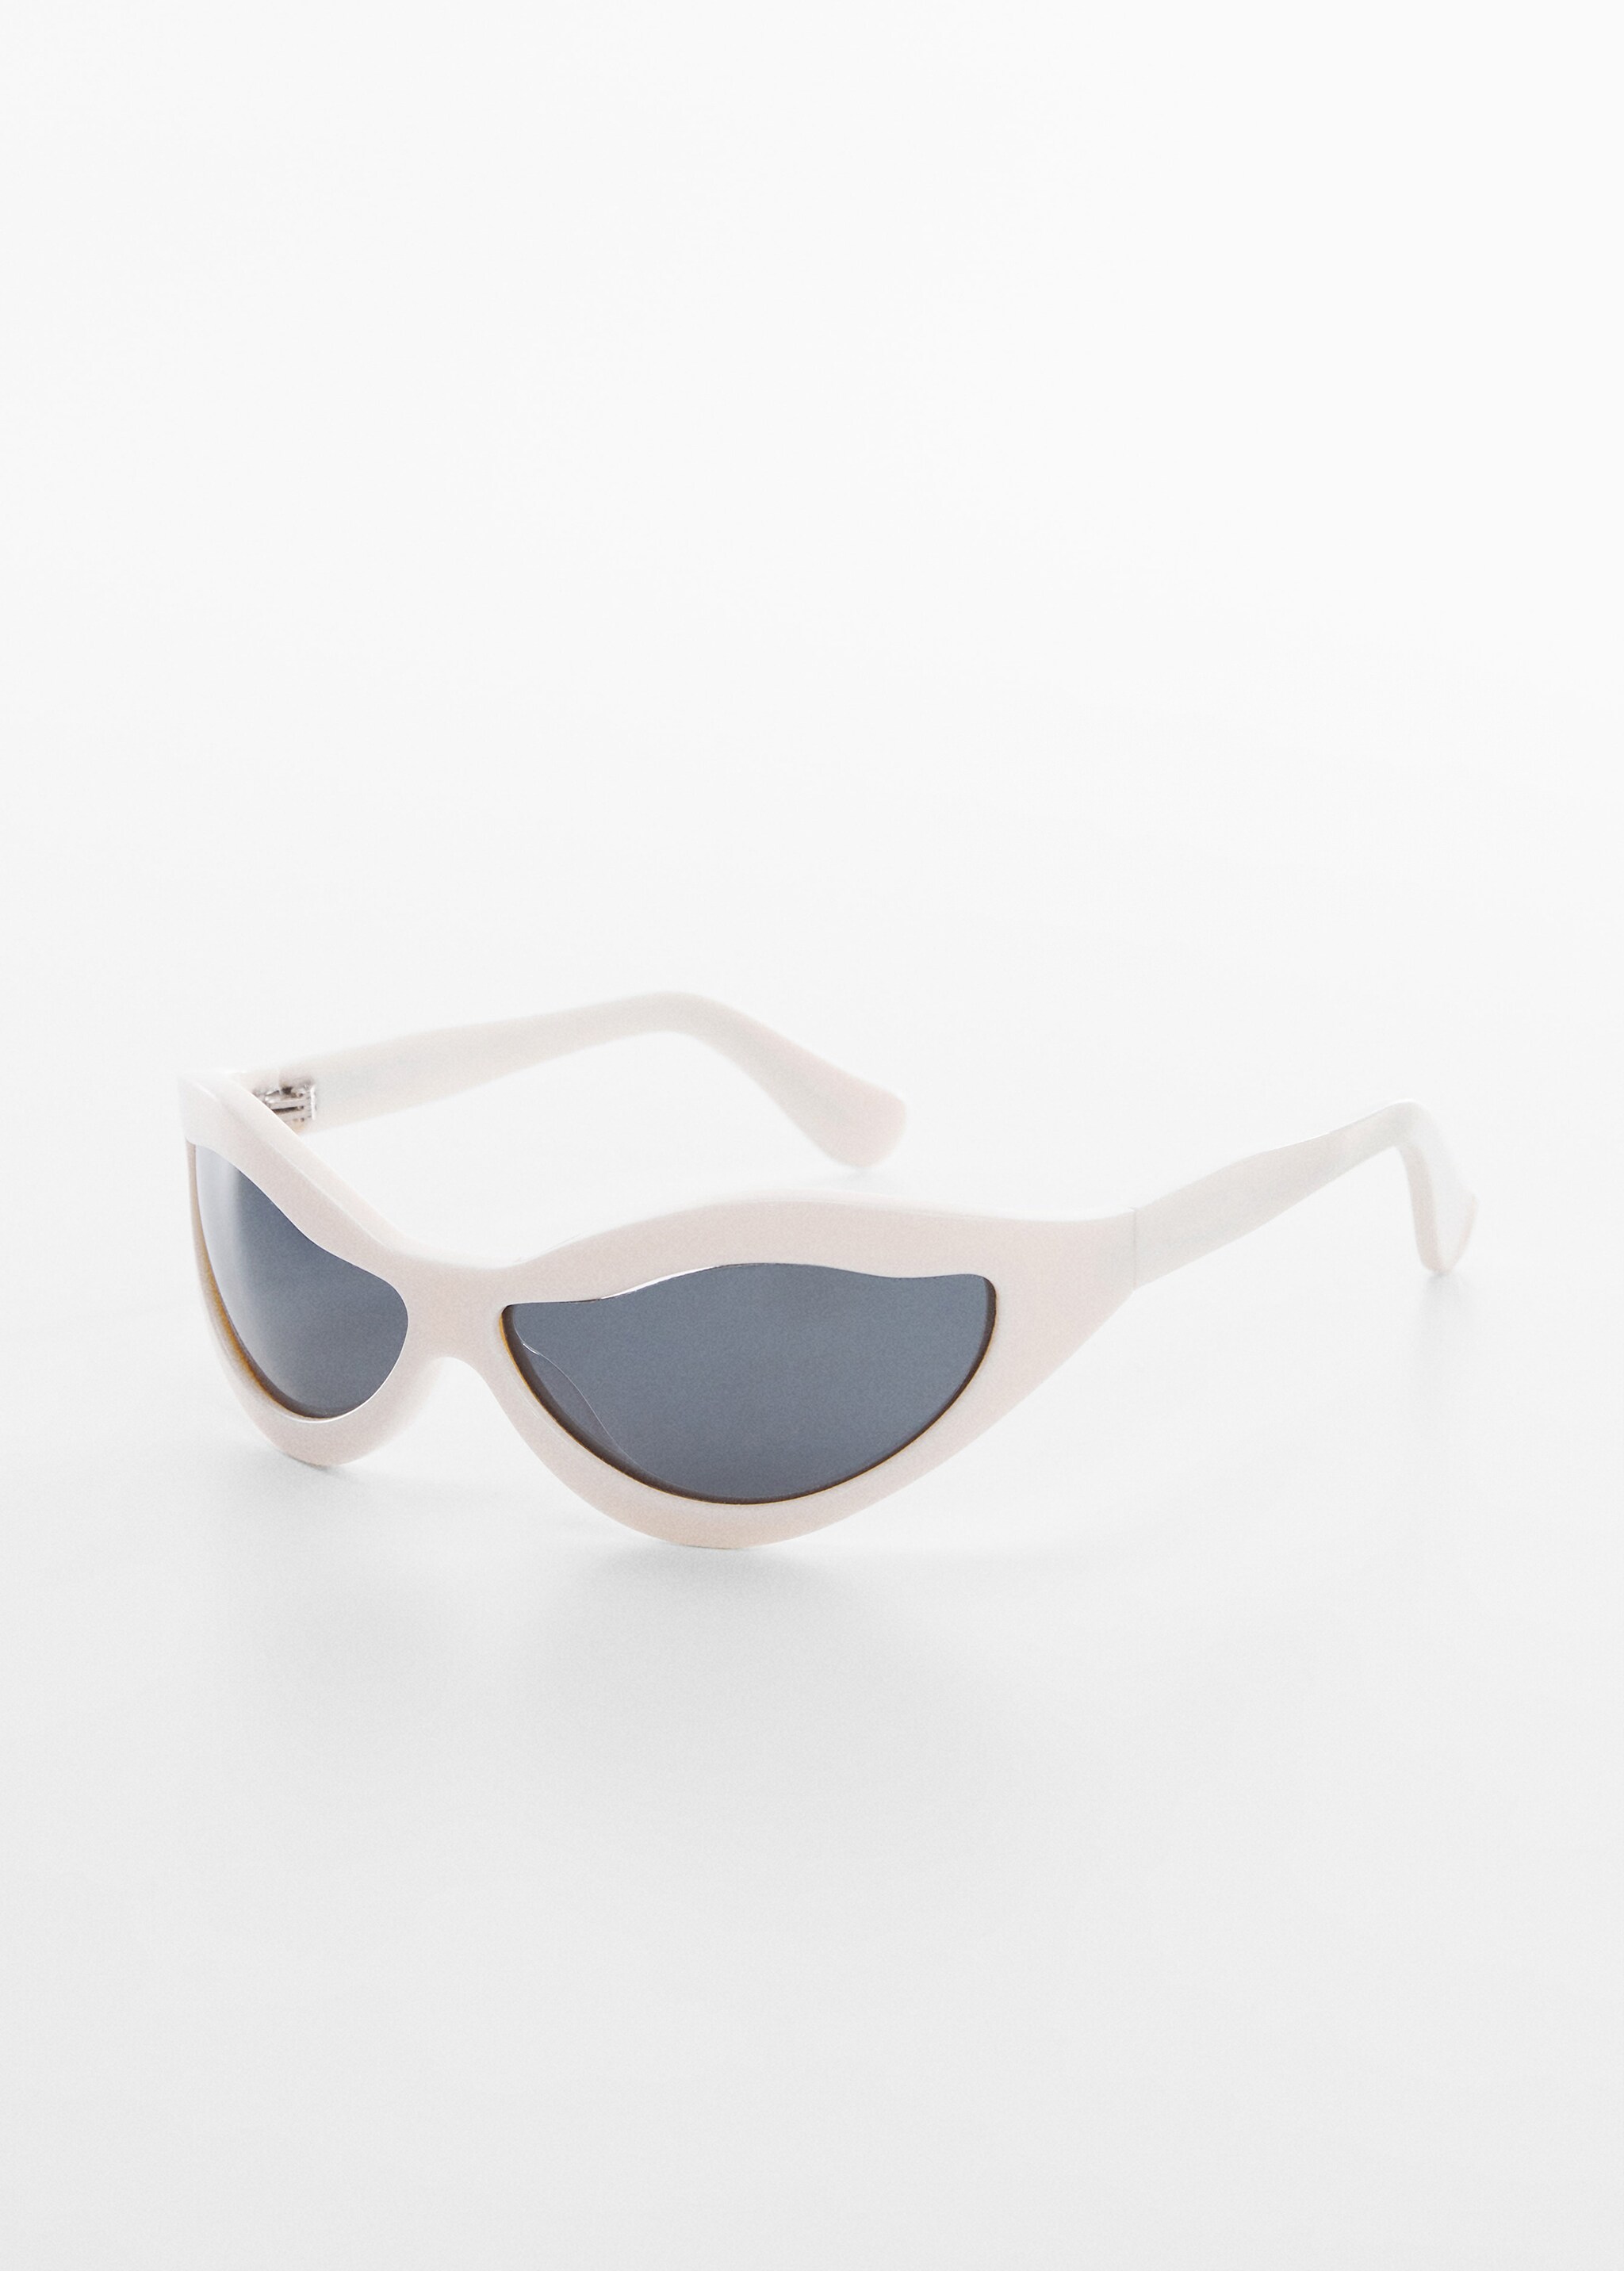 Óculos de sol com lentes irregulares - Plano médio